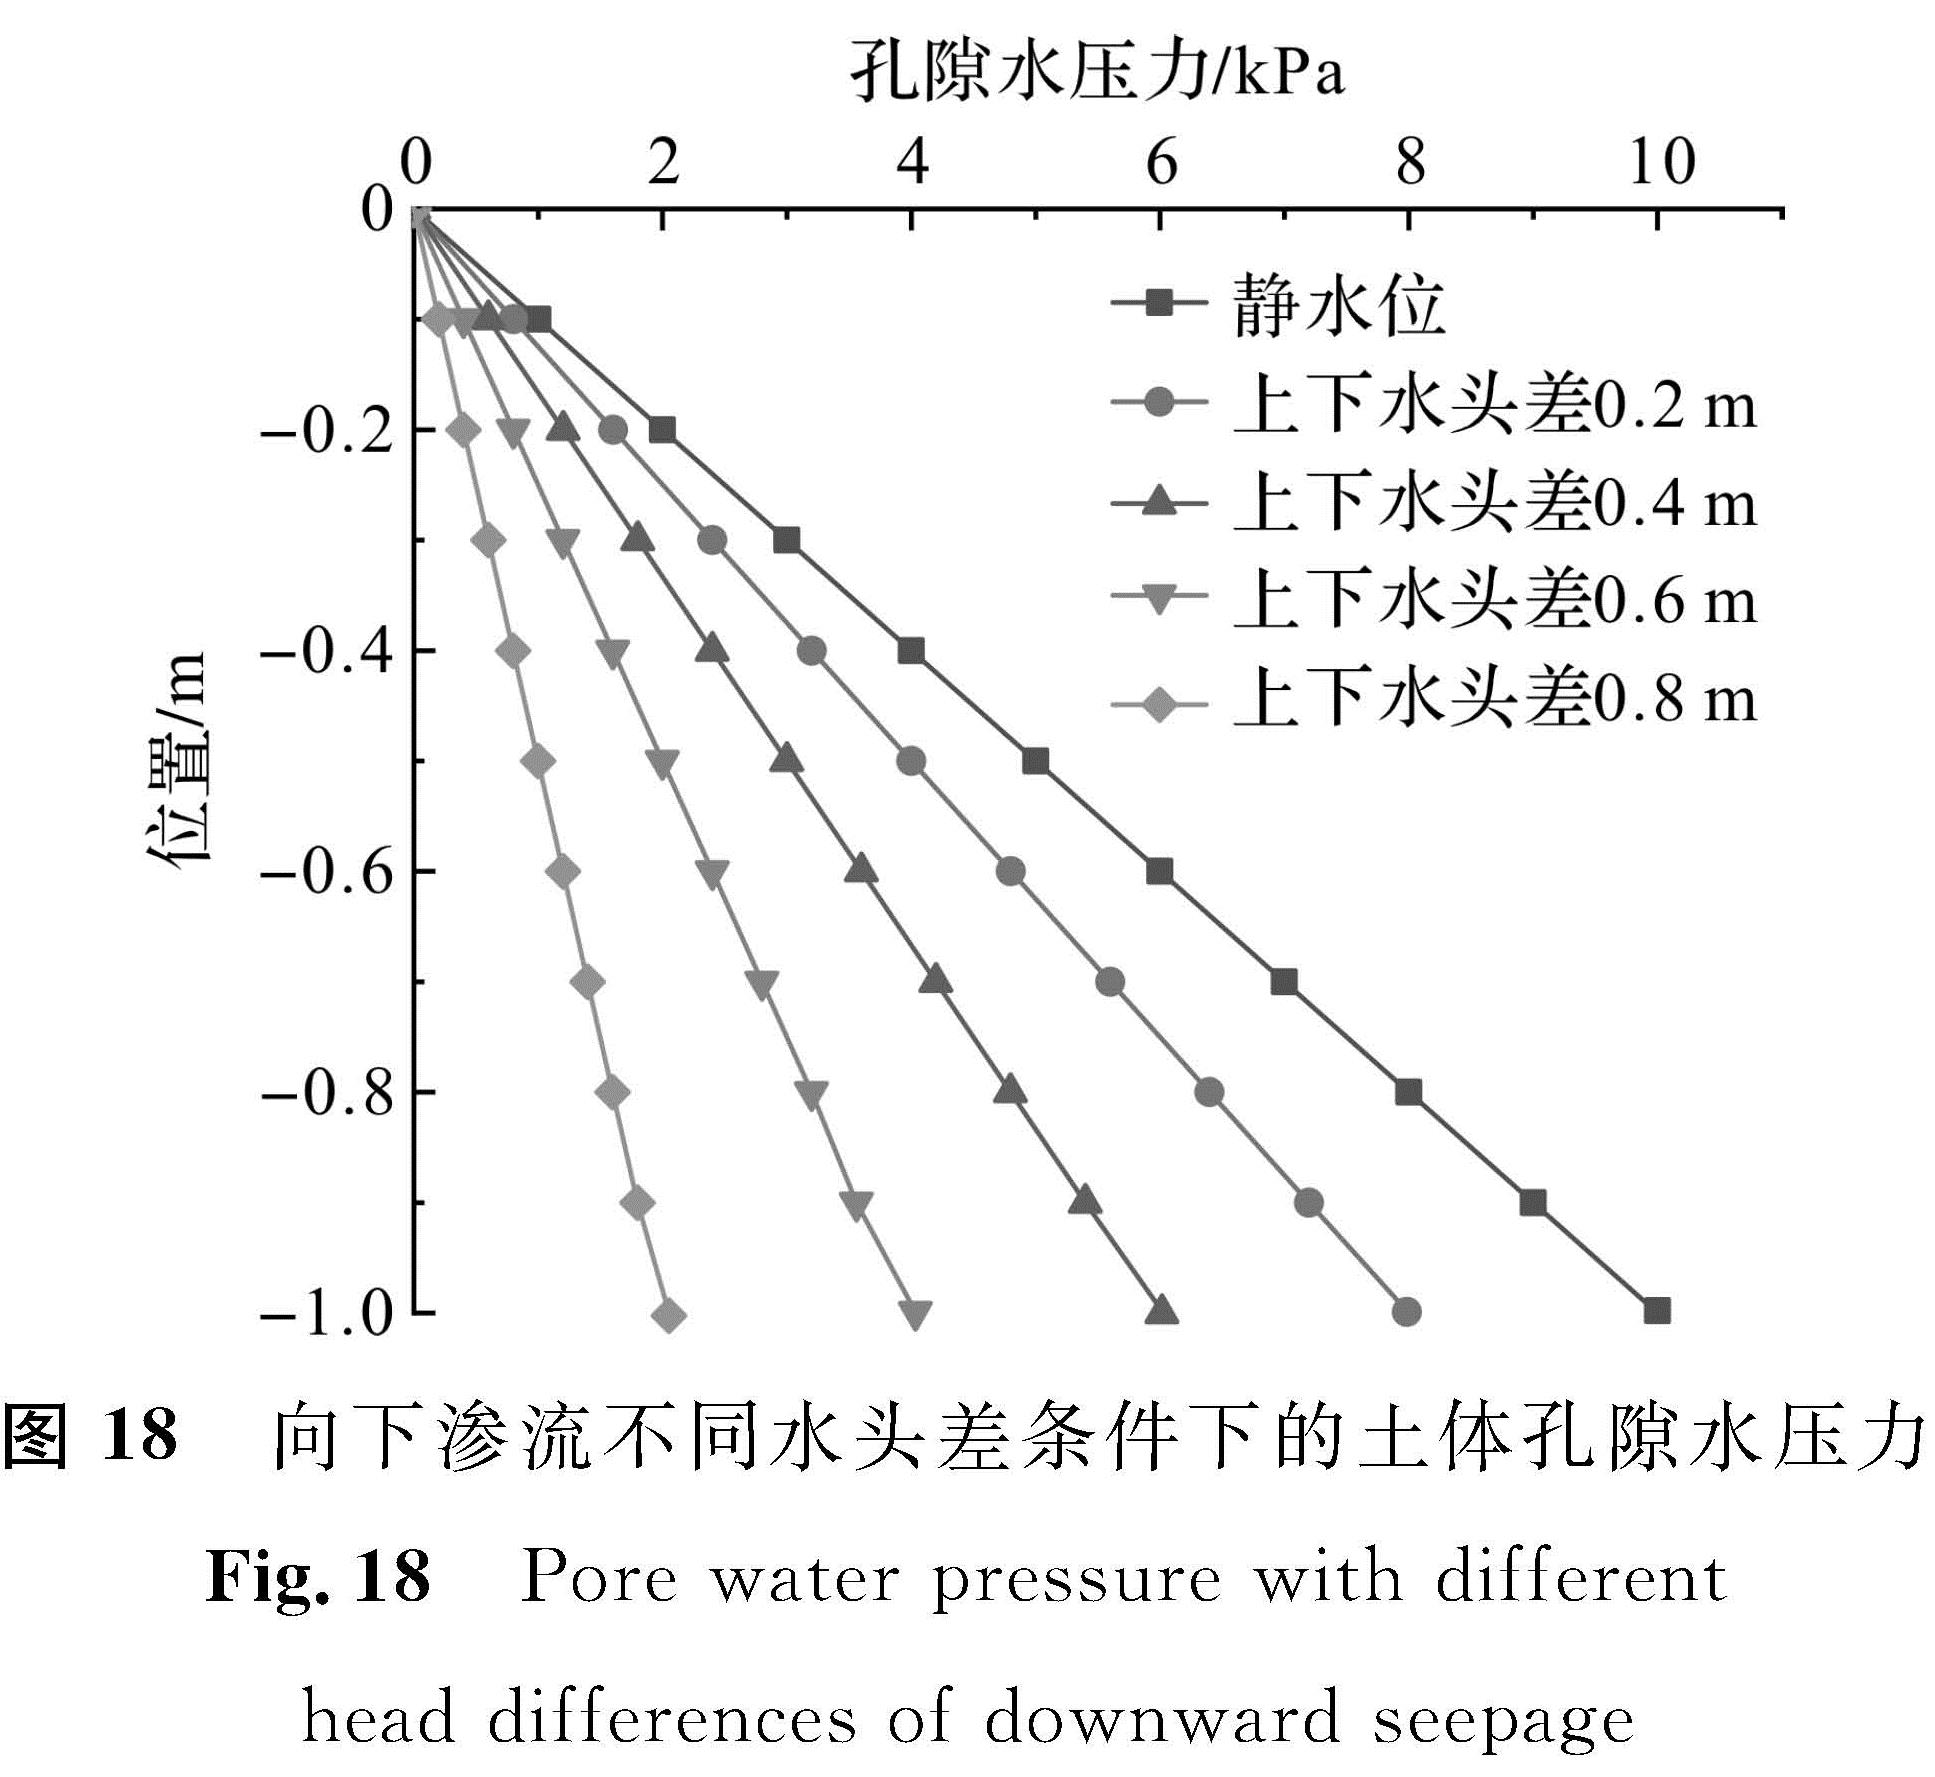 图 18 向下渗流不同水头差条件下的土体孔隙水压力<br/>Fig.18 Pore water pressure with different head differences of downward seepage